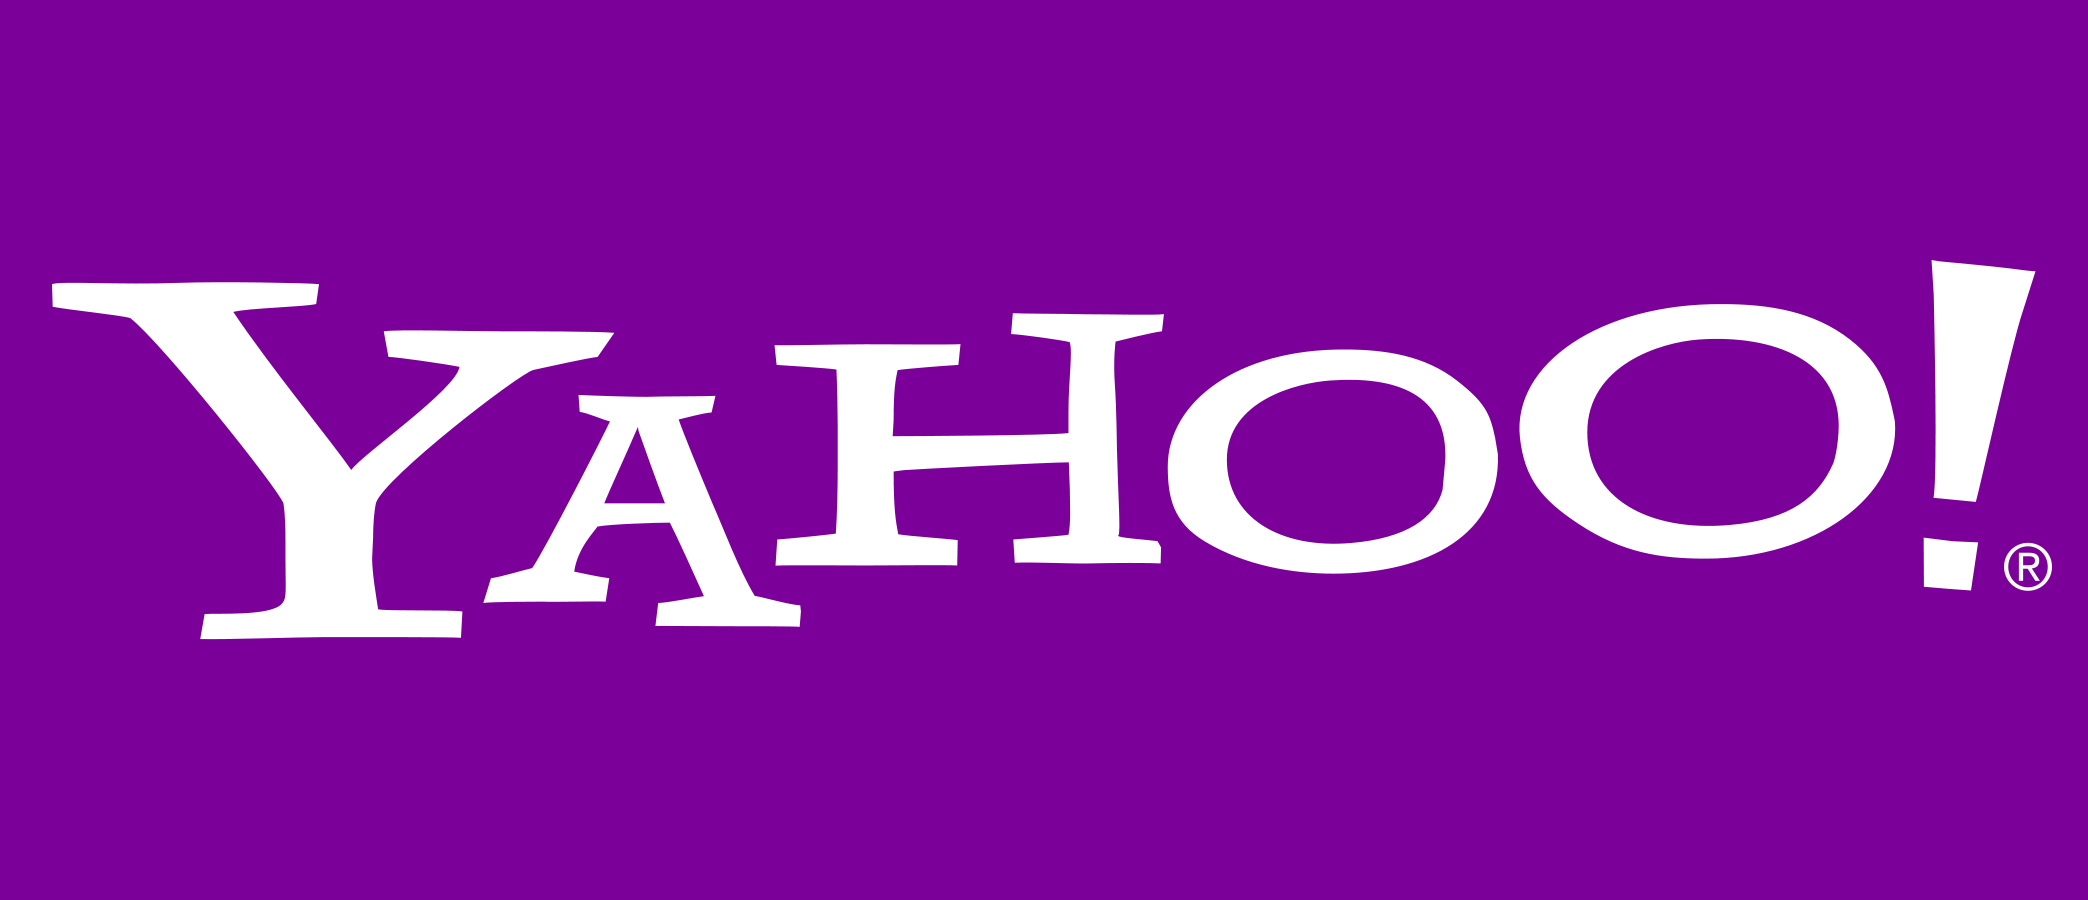 Yahoo campaign setup (u$D)